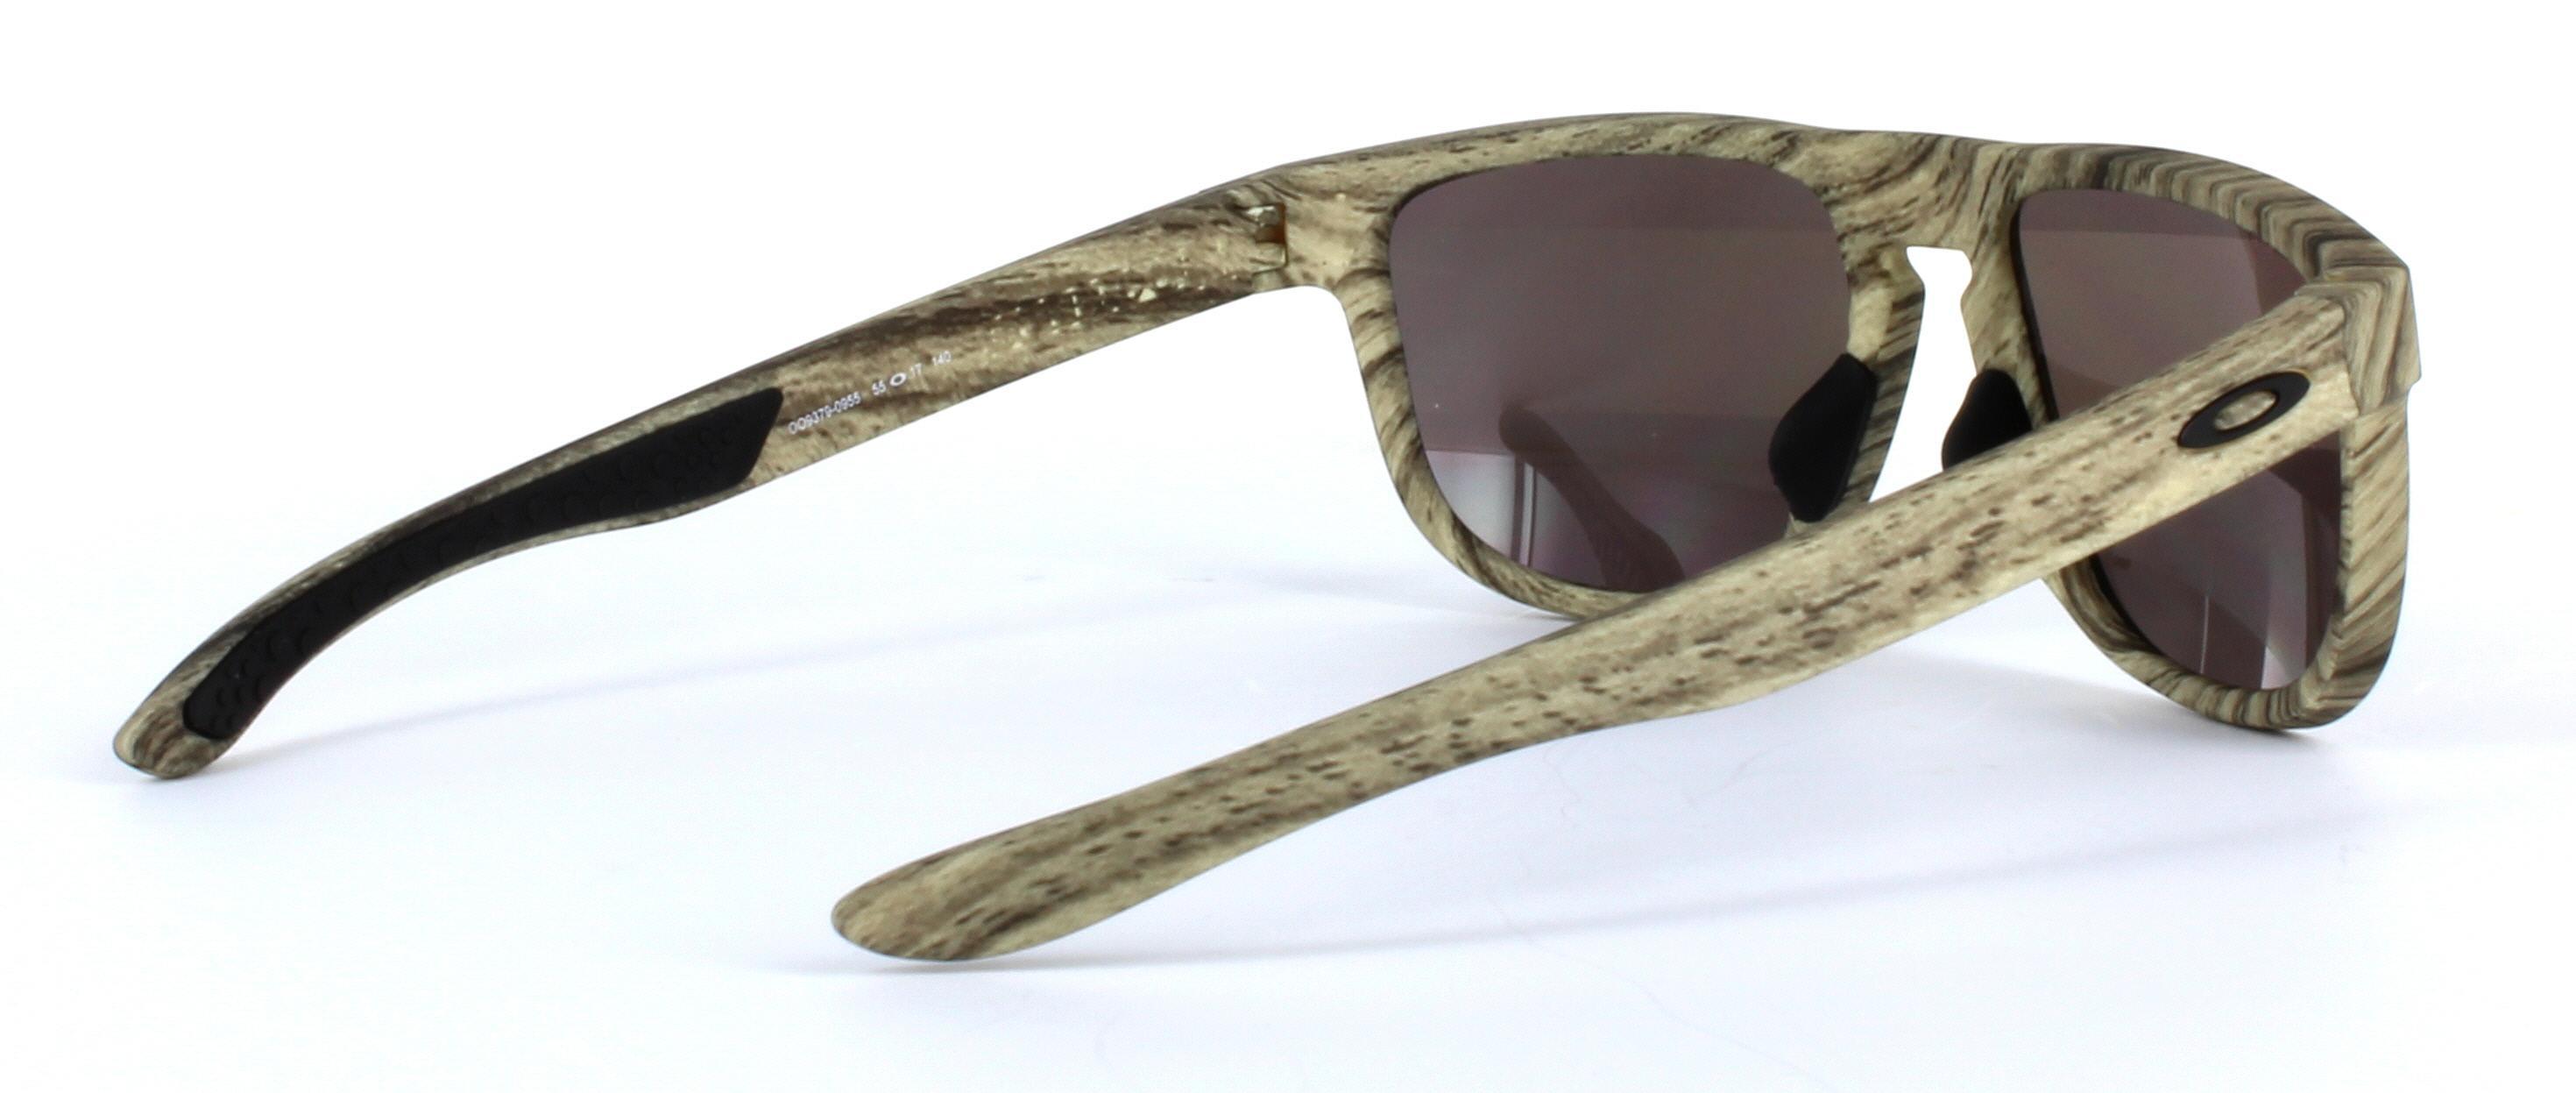 Oakley (O9379) Light Brown Full Rim Plastic Prescription Sunglasses - Image View 4